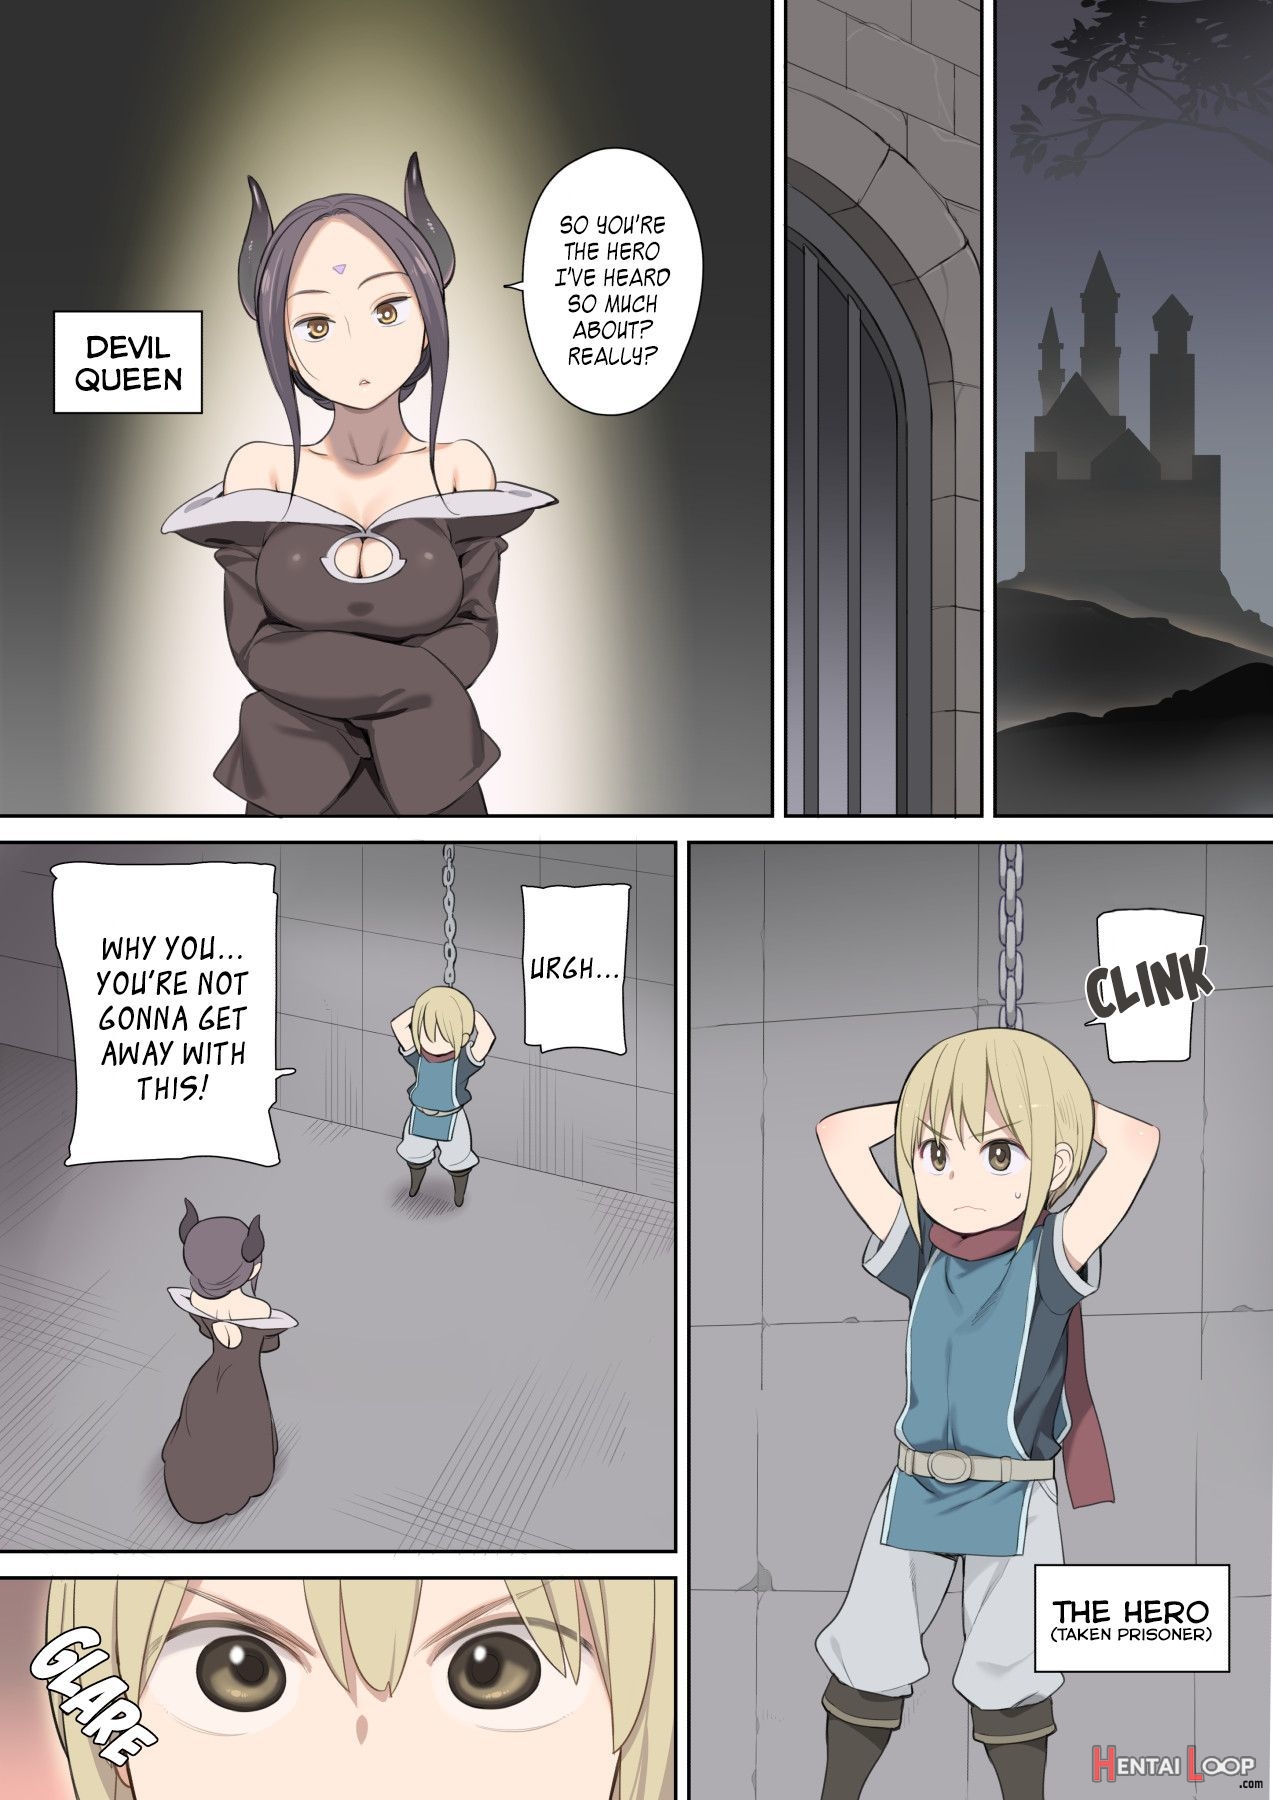 A Hero Taken Prisoner Meets The Demon Queen And Her Elf page 2